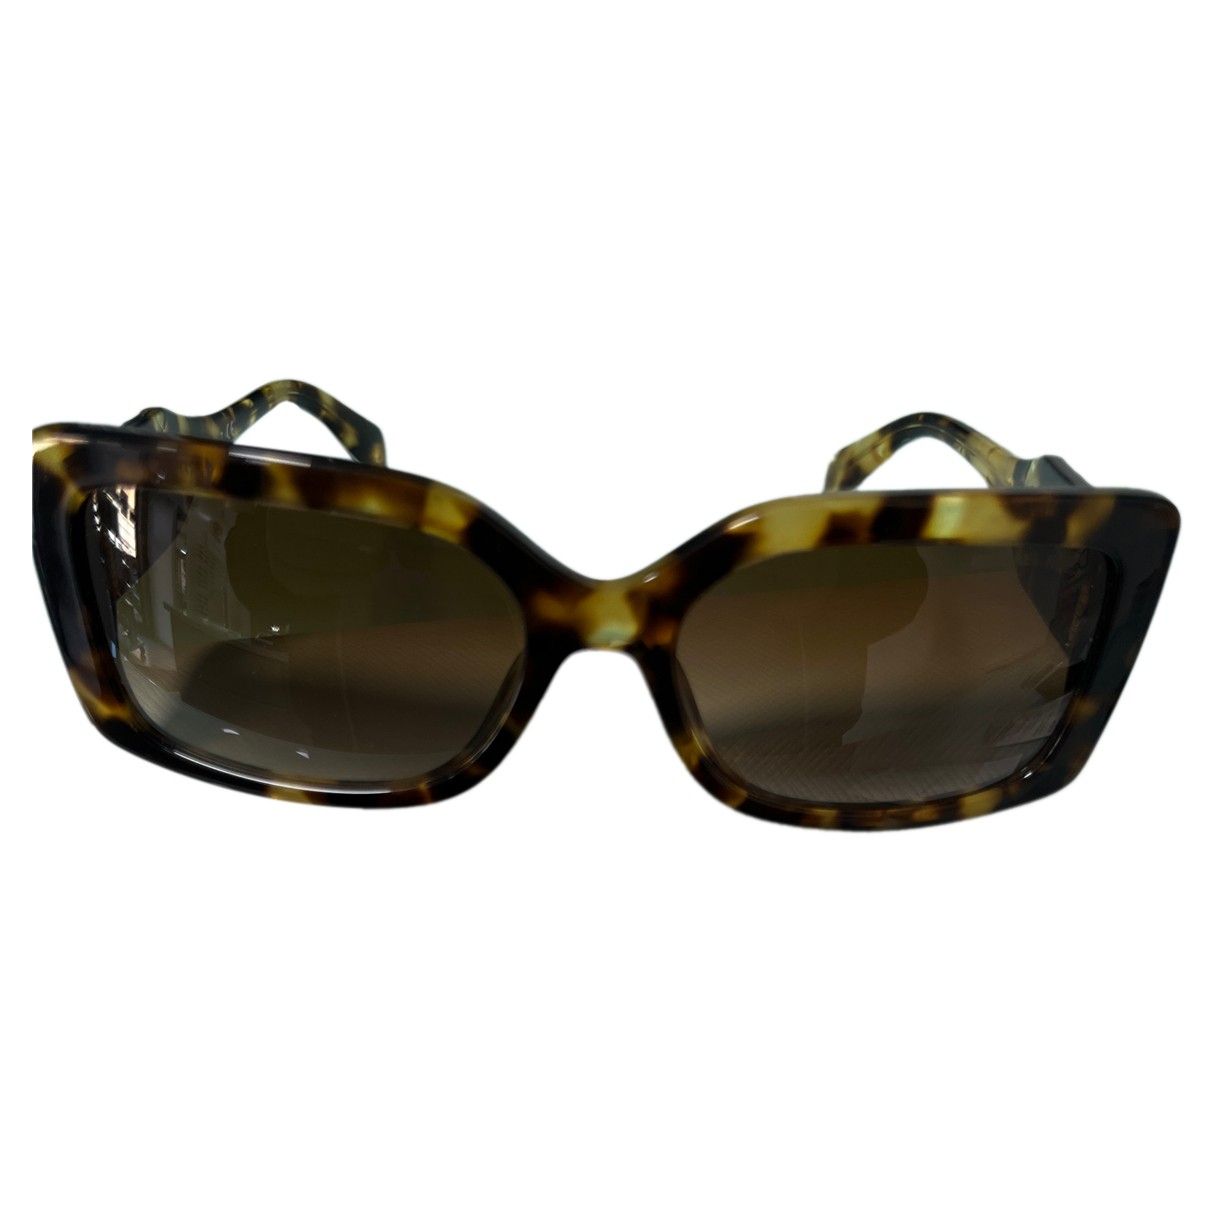 Oversized sunglasses Michael Kors - Vintage